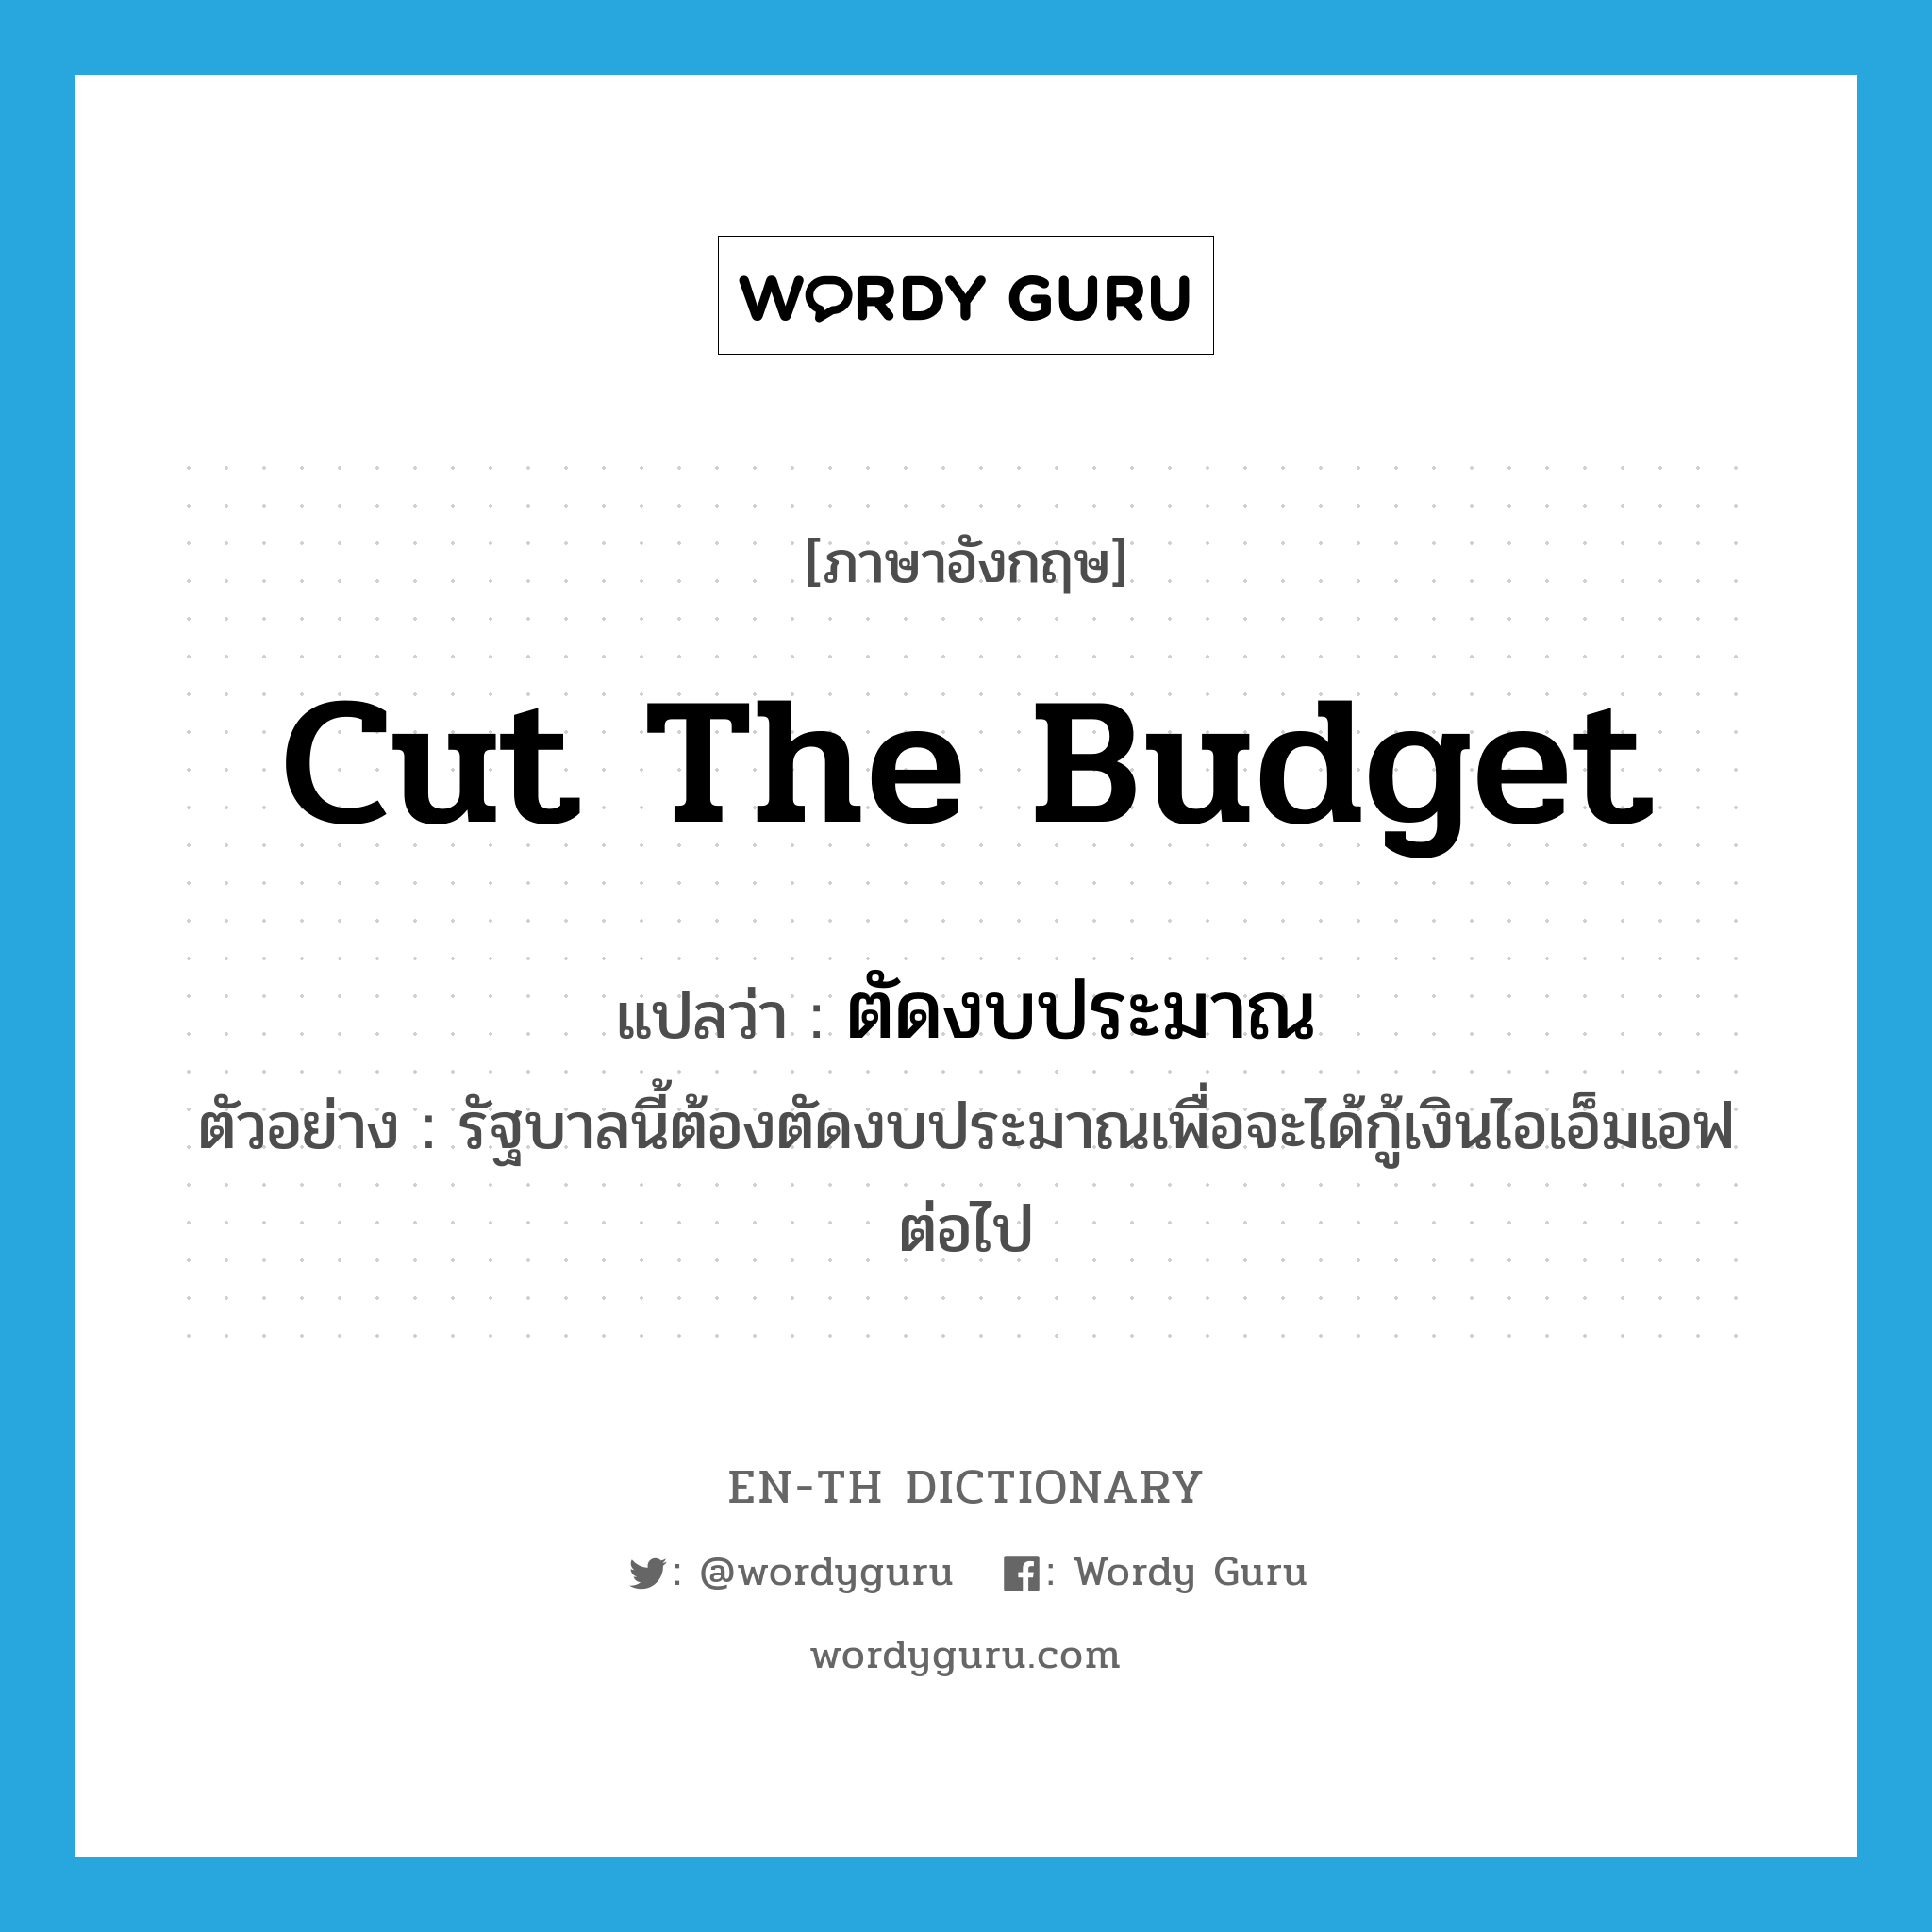 cut the budget แปลว่า?, คำศัพท์ภาษาอังกฤษ cut the budget แปลว่า ตัดงบประมาณ ประเภท V ตัวอย่าง รัฐบาลนี้ต้องตัดงบประมาณเพื่อจะได้กู้เงินไอเอ็มเอฟต่อไป หมวด V